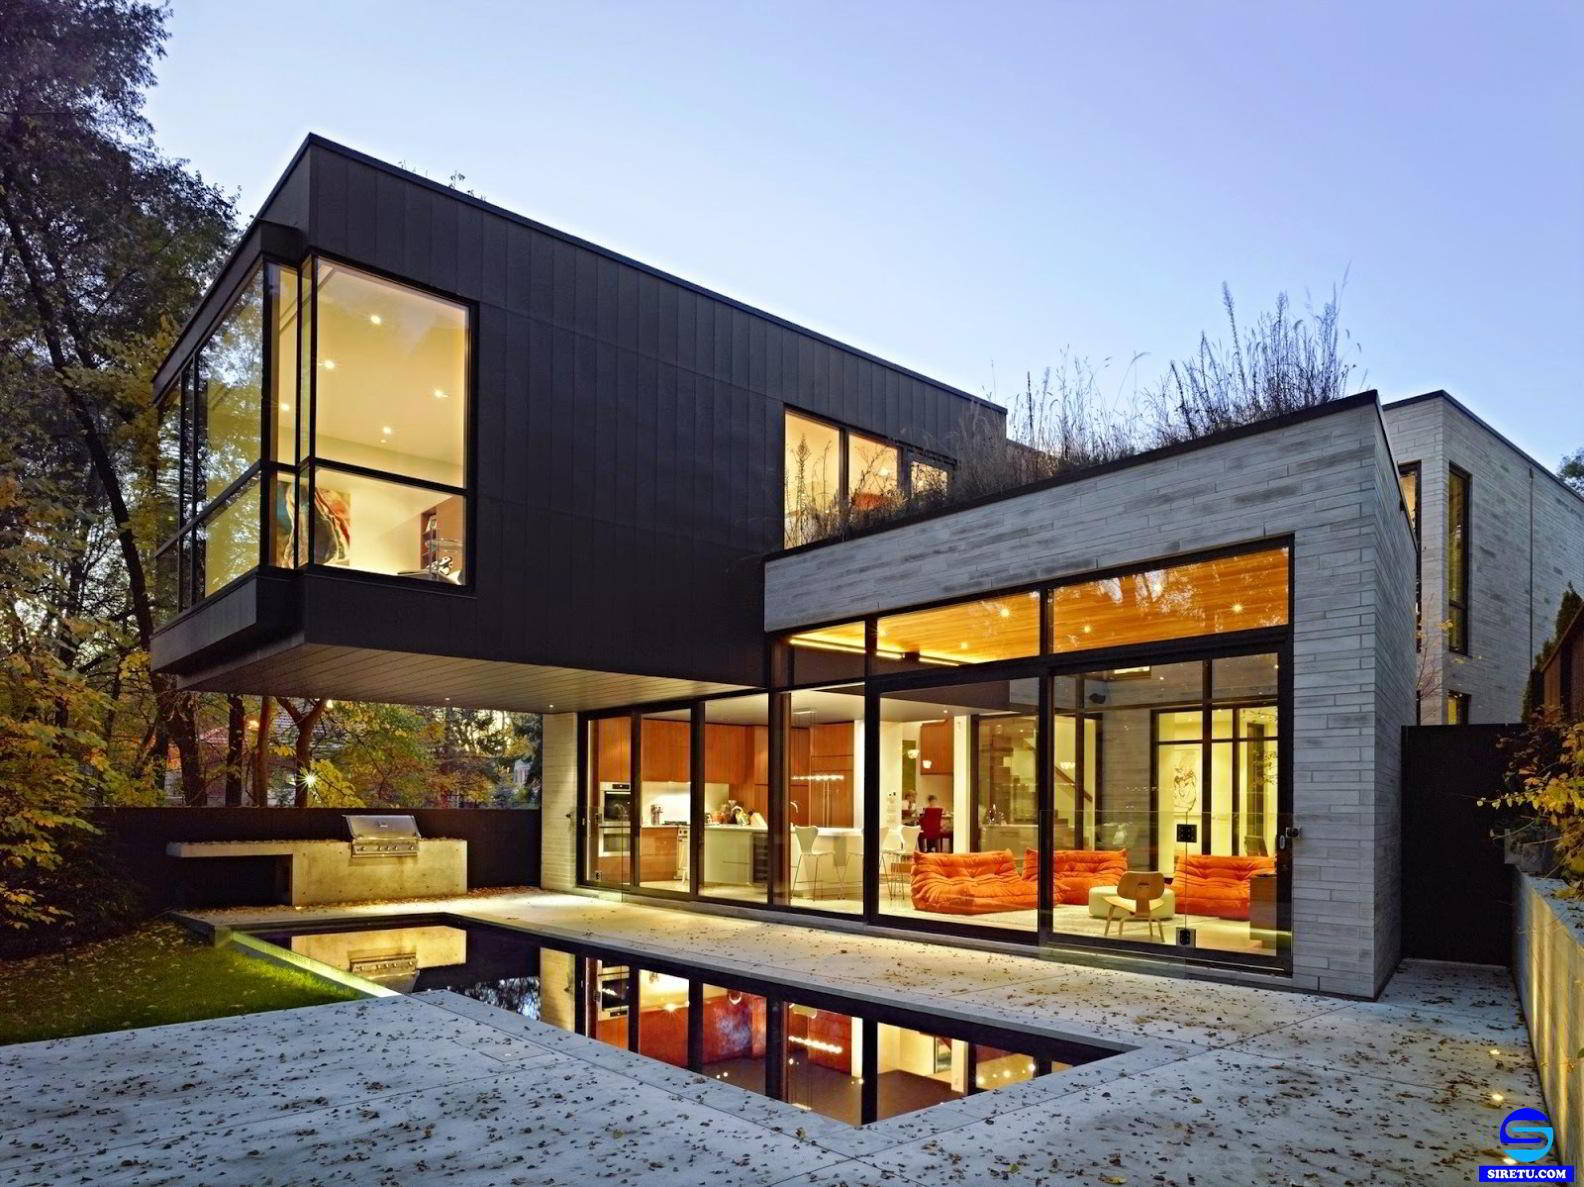  20 desain rumah kaca minimalis modern 2 lantai sederhana